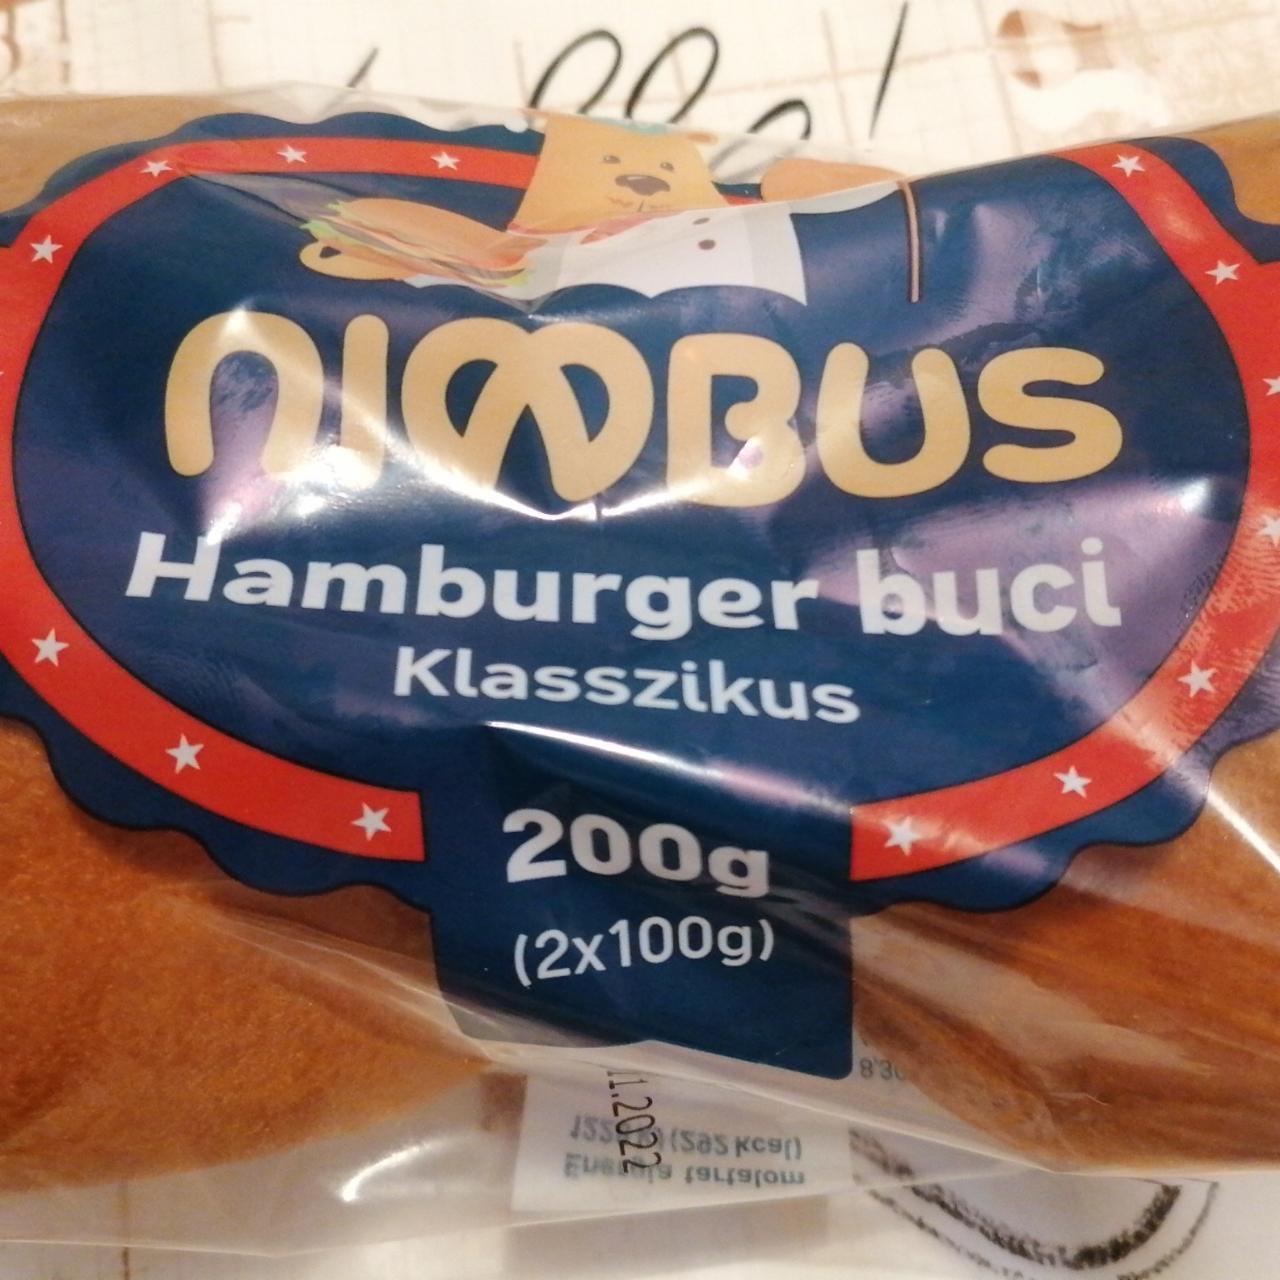 Képek - Hamburger buci klasszikus Nimbus